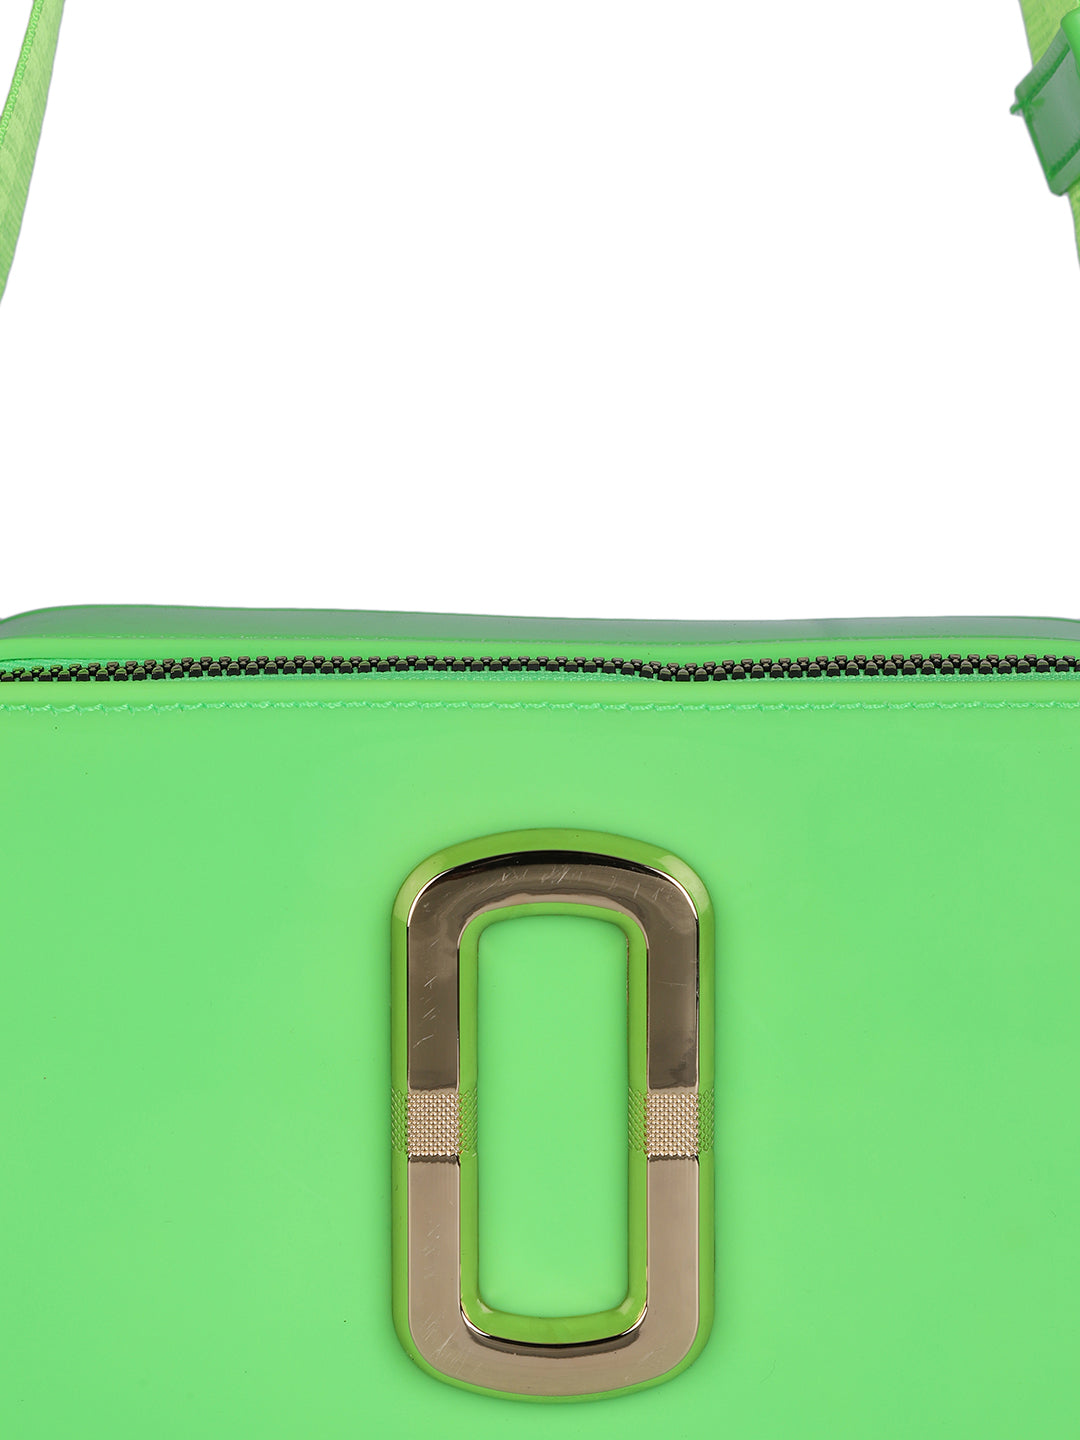 MINI WESST Women's Green Sling Bag